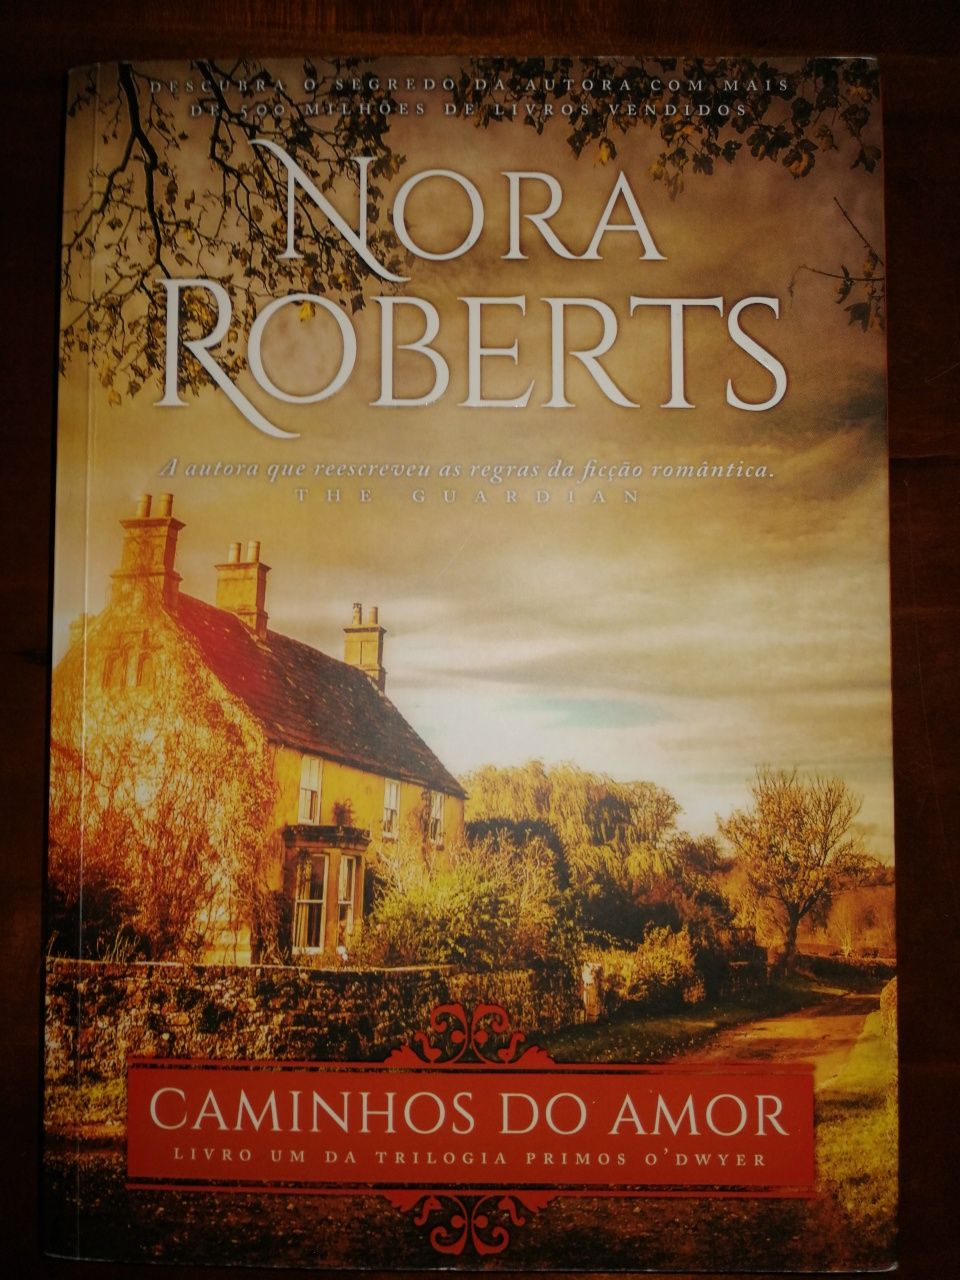 Nora Roberts "Caminhos do Amor "